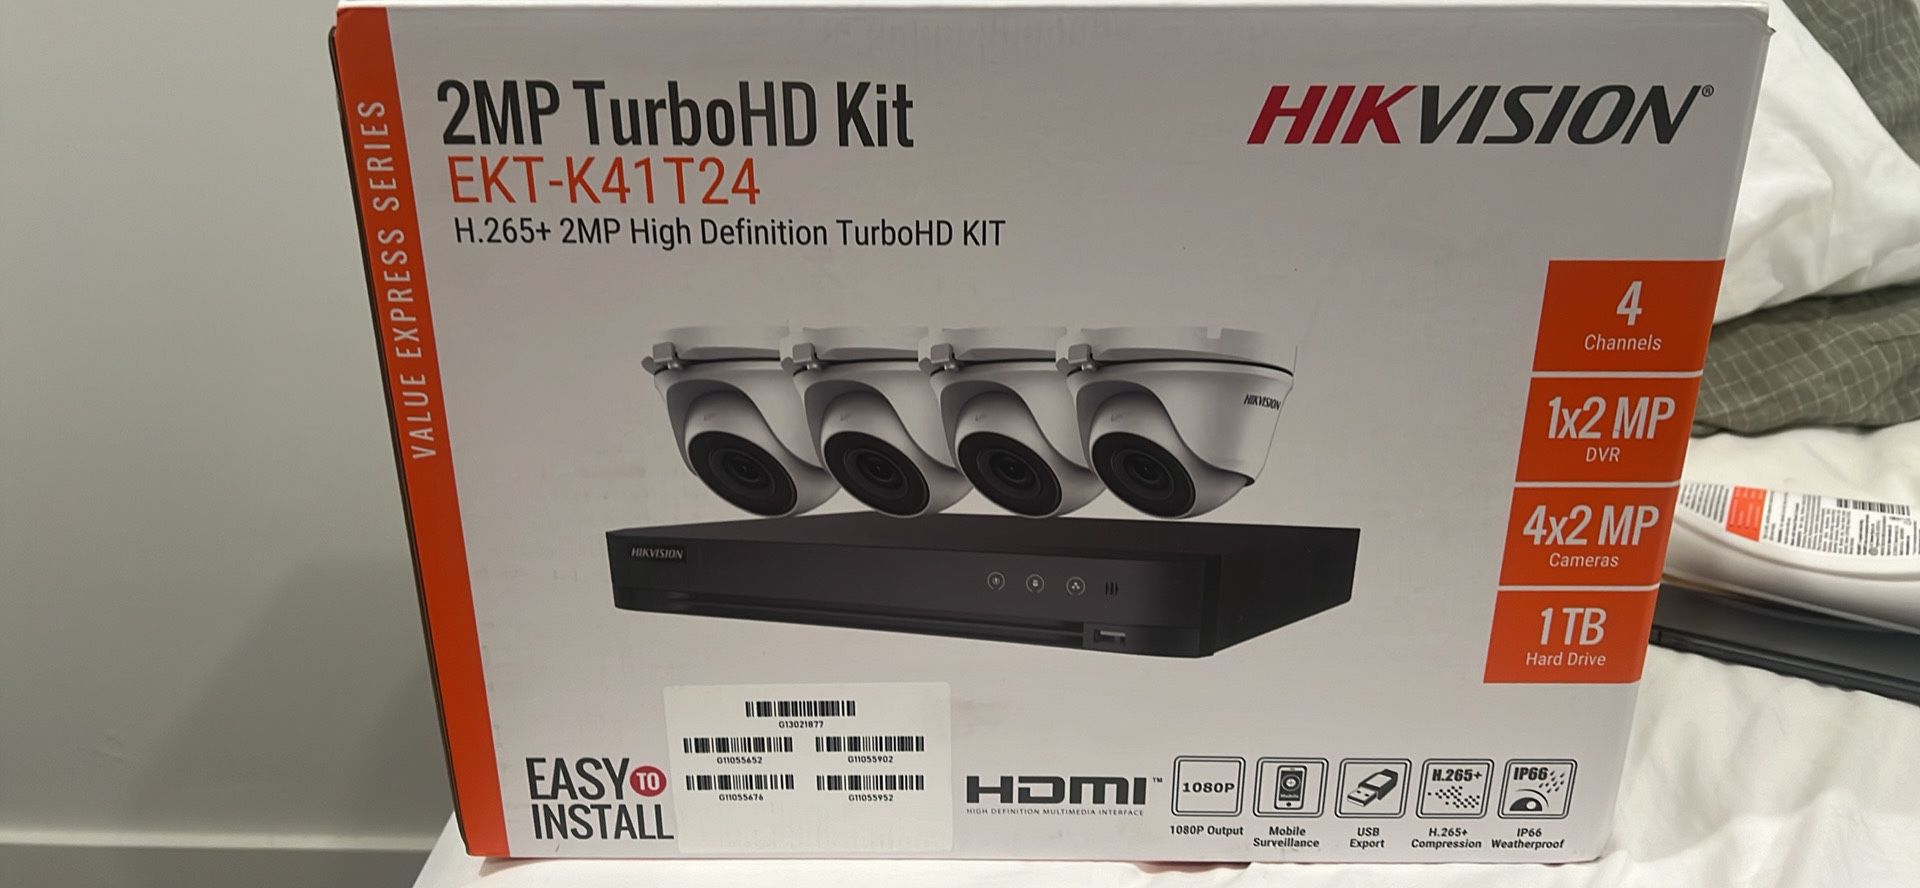 HIK ViSION 2MP turbo HD kit